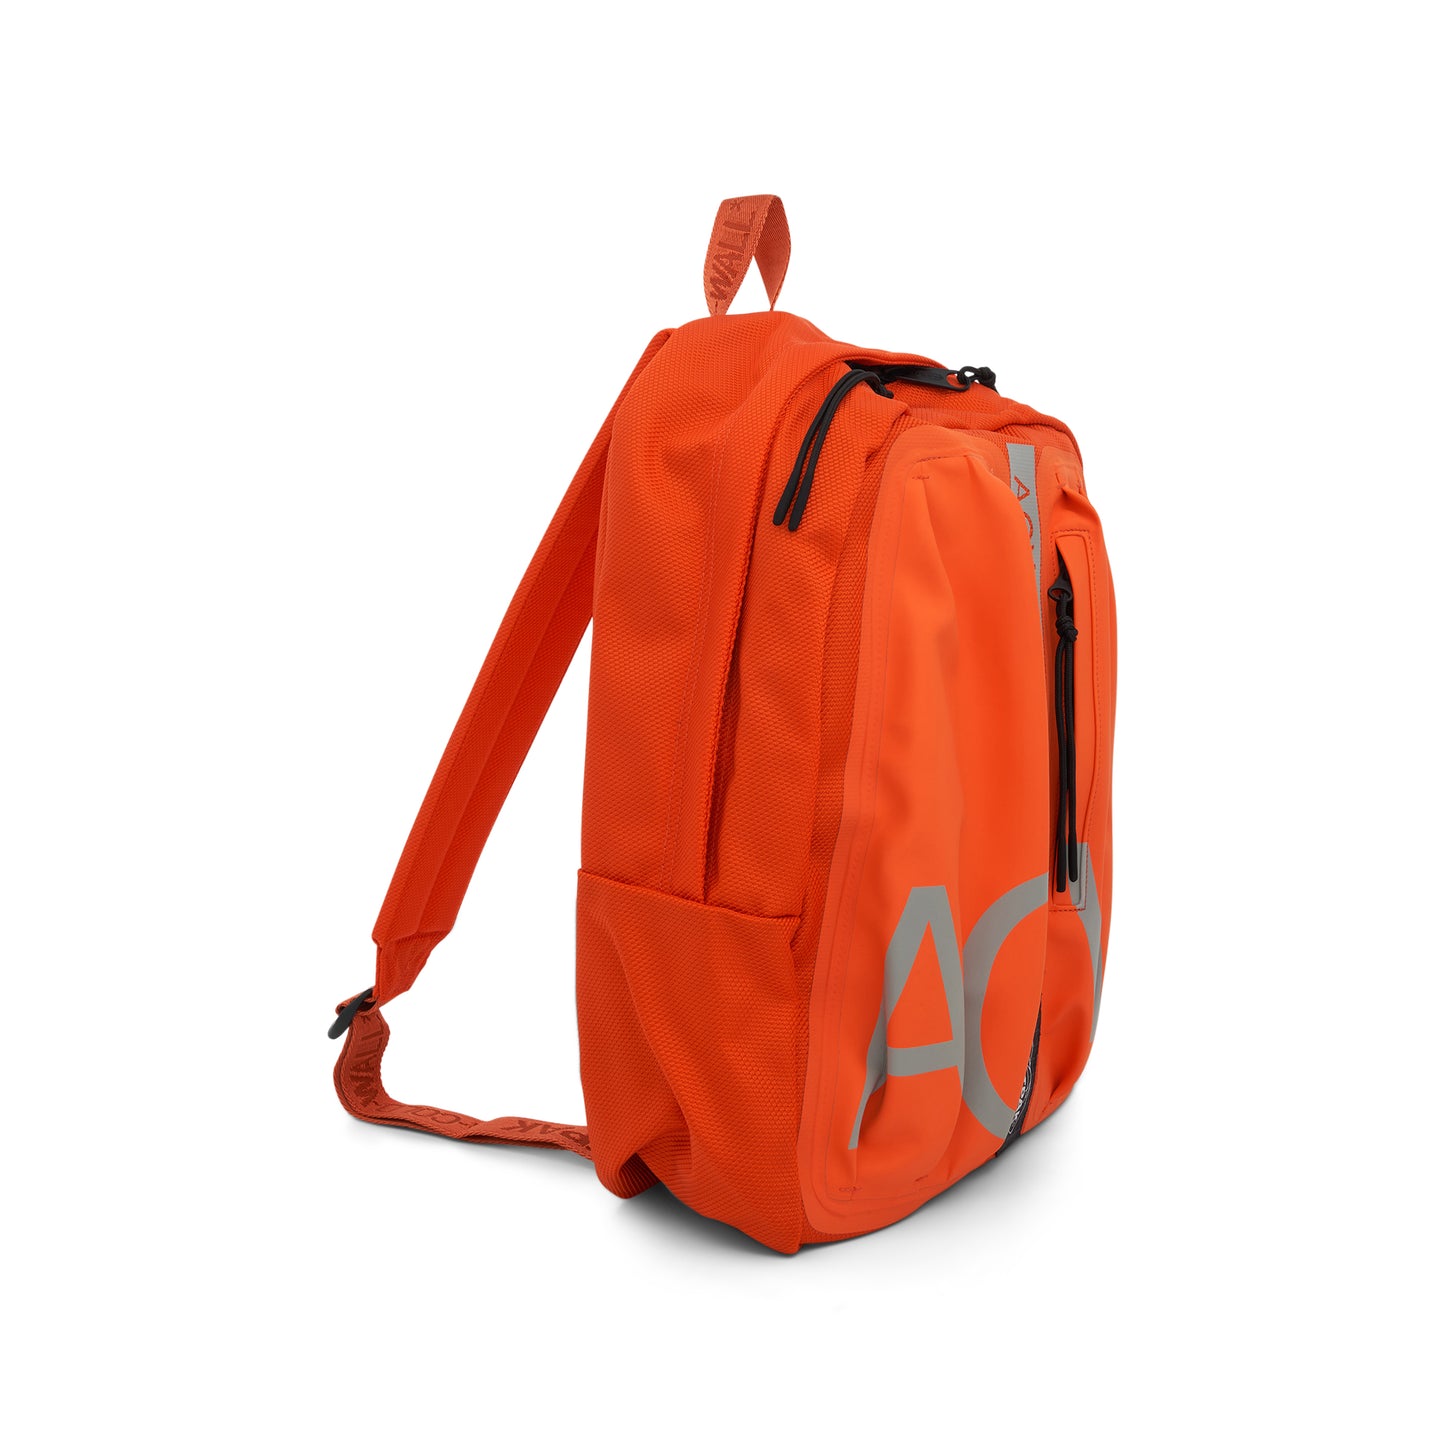 Eastpak Large Backpack in Rich Orange/Light Grey